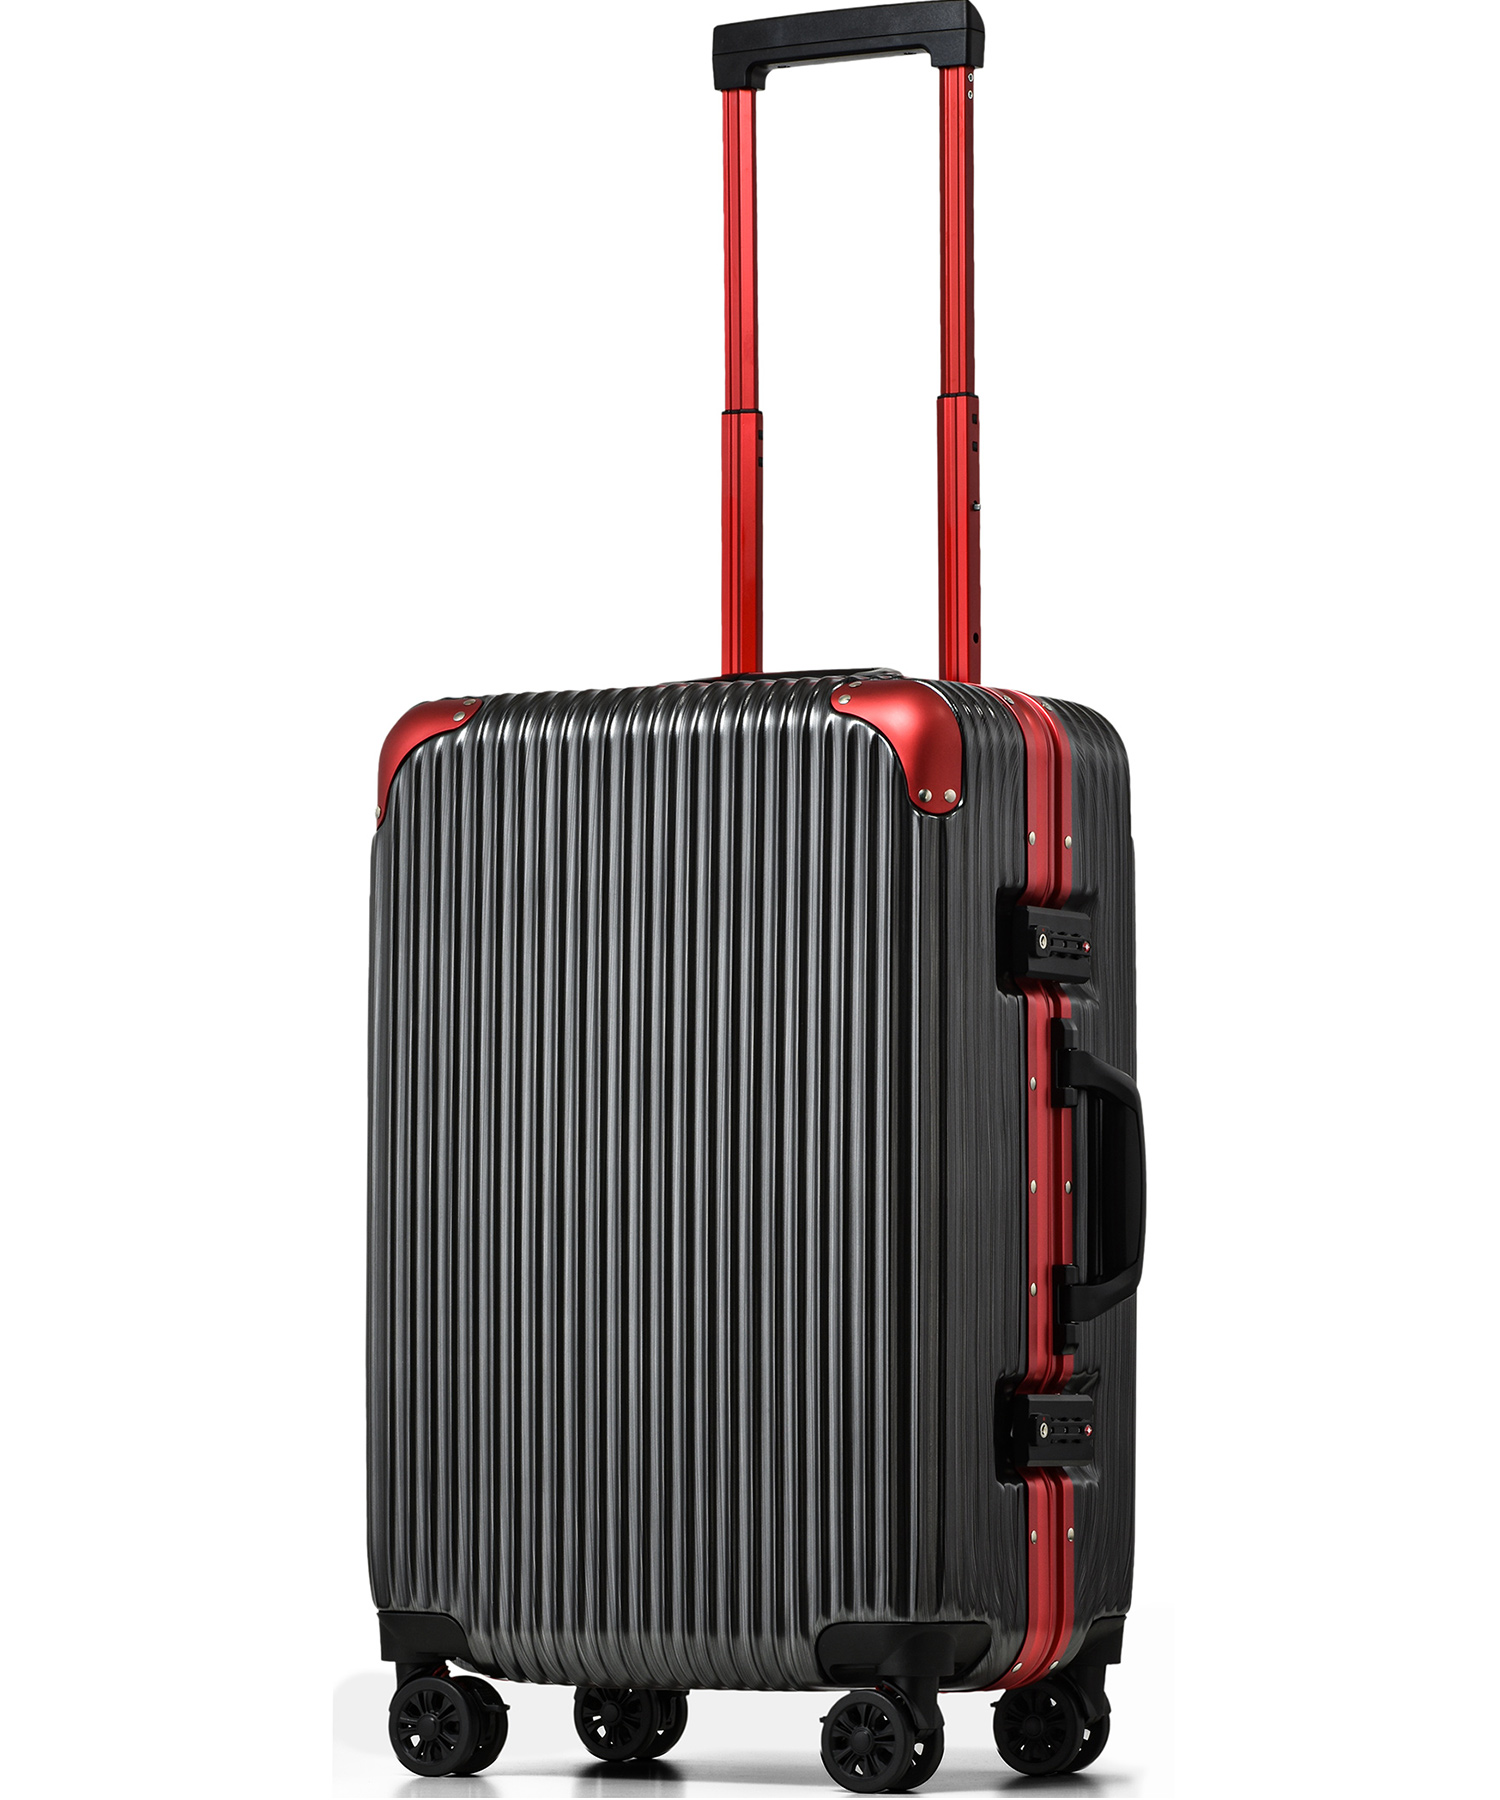 Proevo スーツケース M キャリーケース キャリーバッグ サスペンション ストッパー ブレーキ フレーム アルミ 中型 TSA ダイヤル 8輪  静音